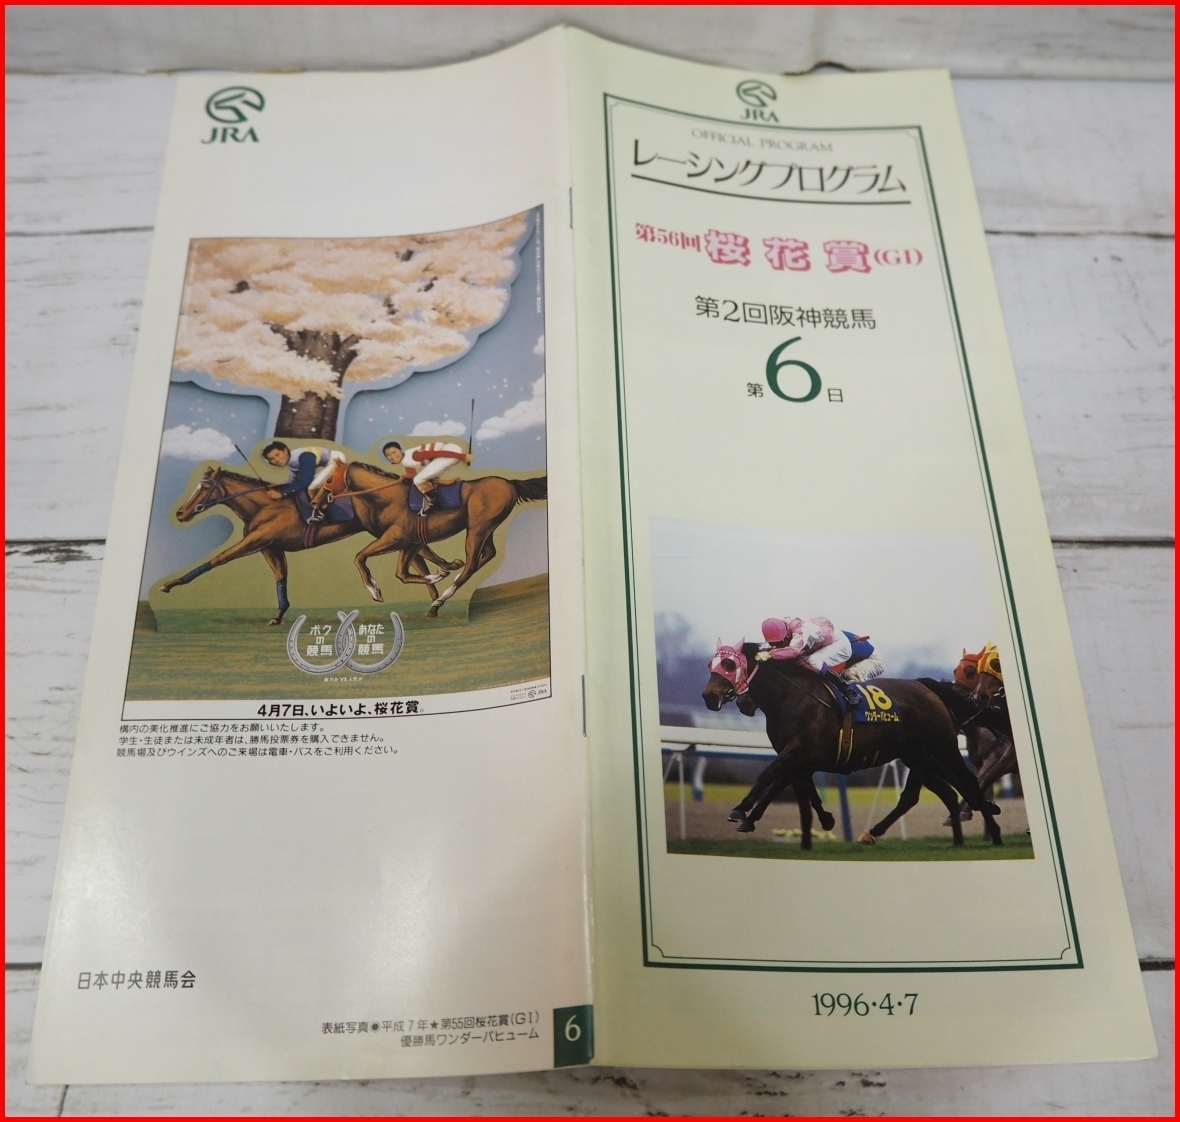 JRA racing   pro  грамм  1996 год 4/7【...56 раз  ... цветы  ...(G？)】...(... ...) обложка  чудо ...【 стоимость доставки включена  】